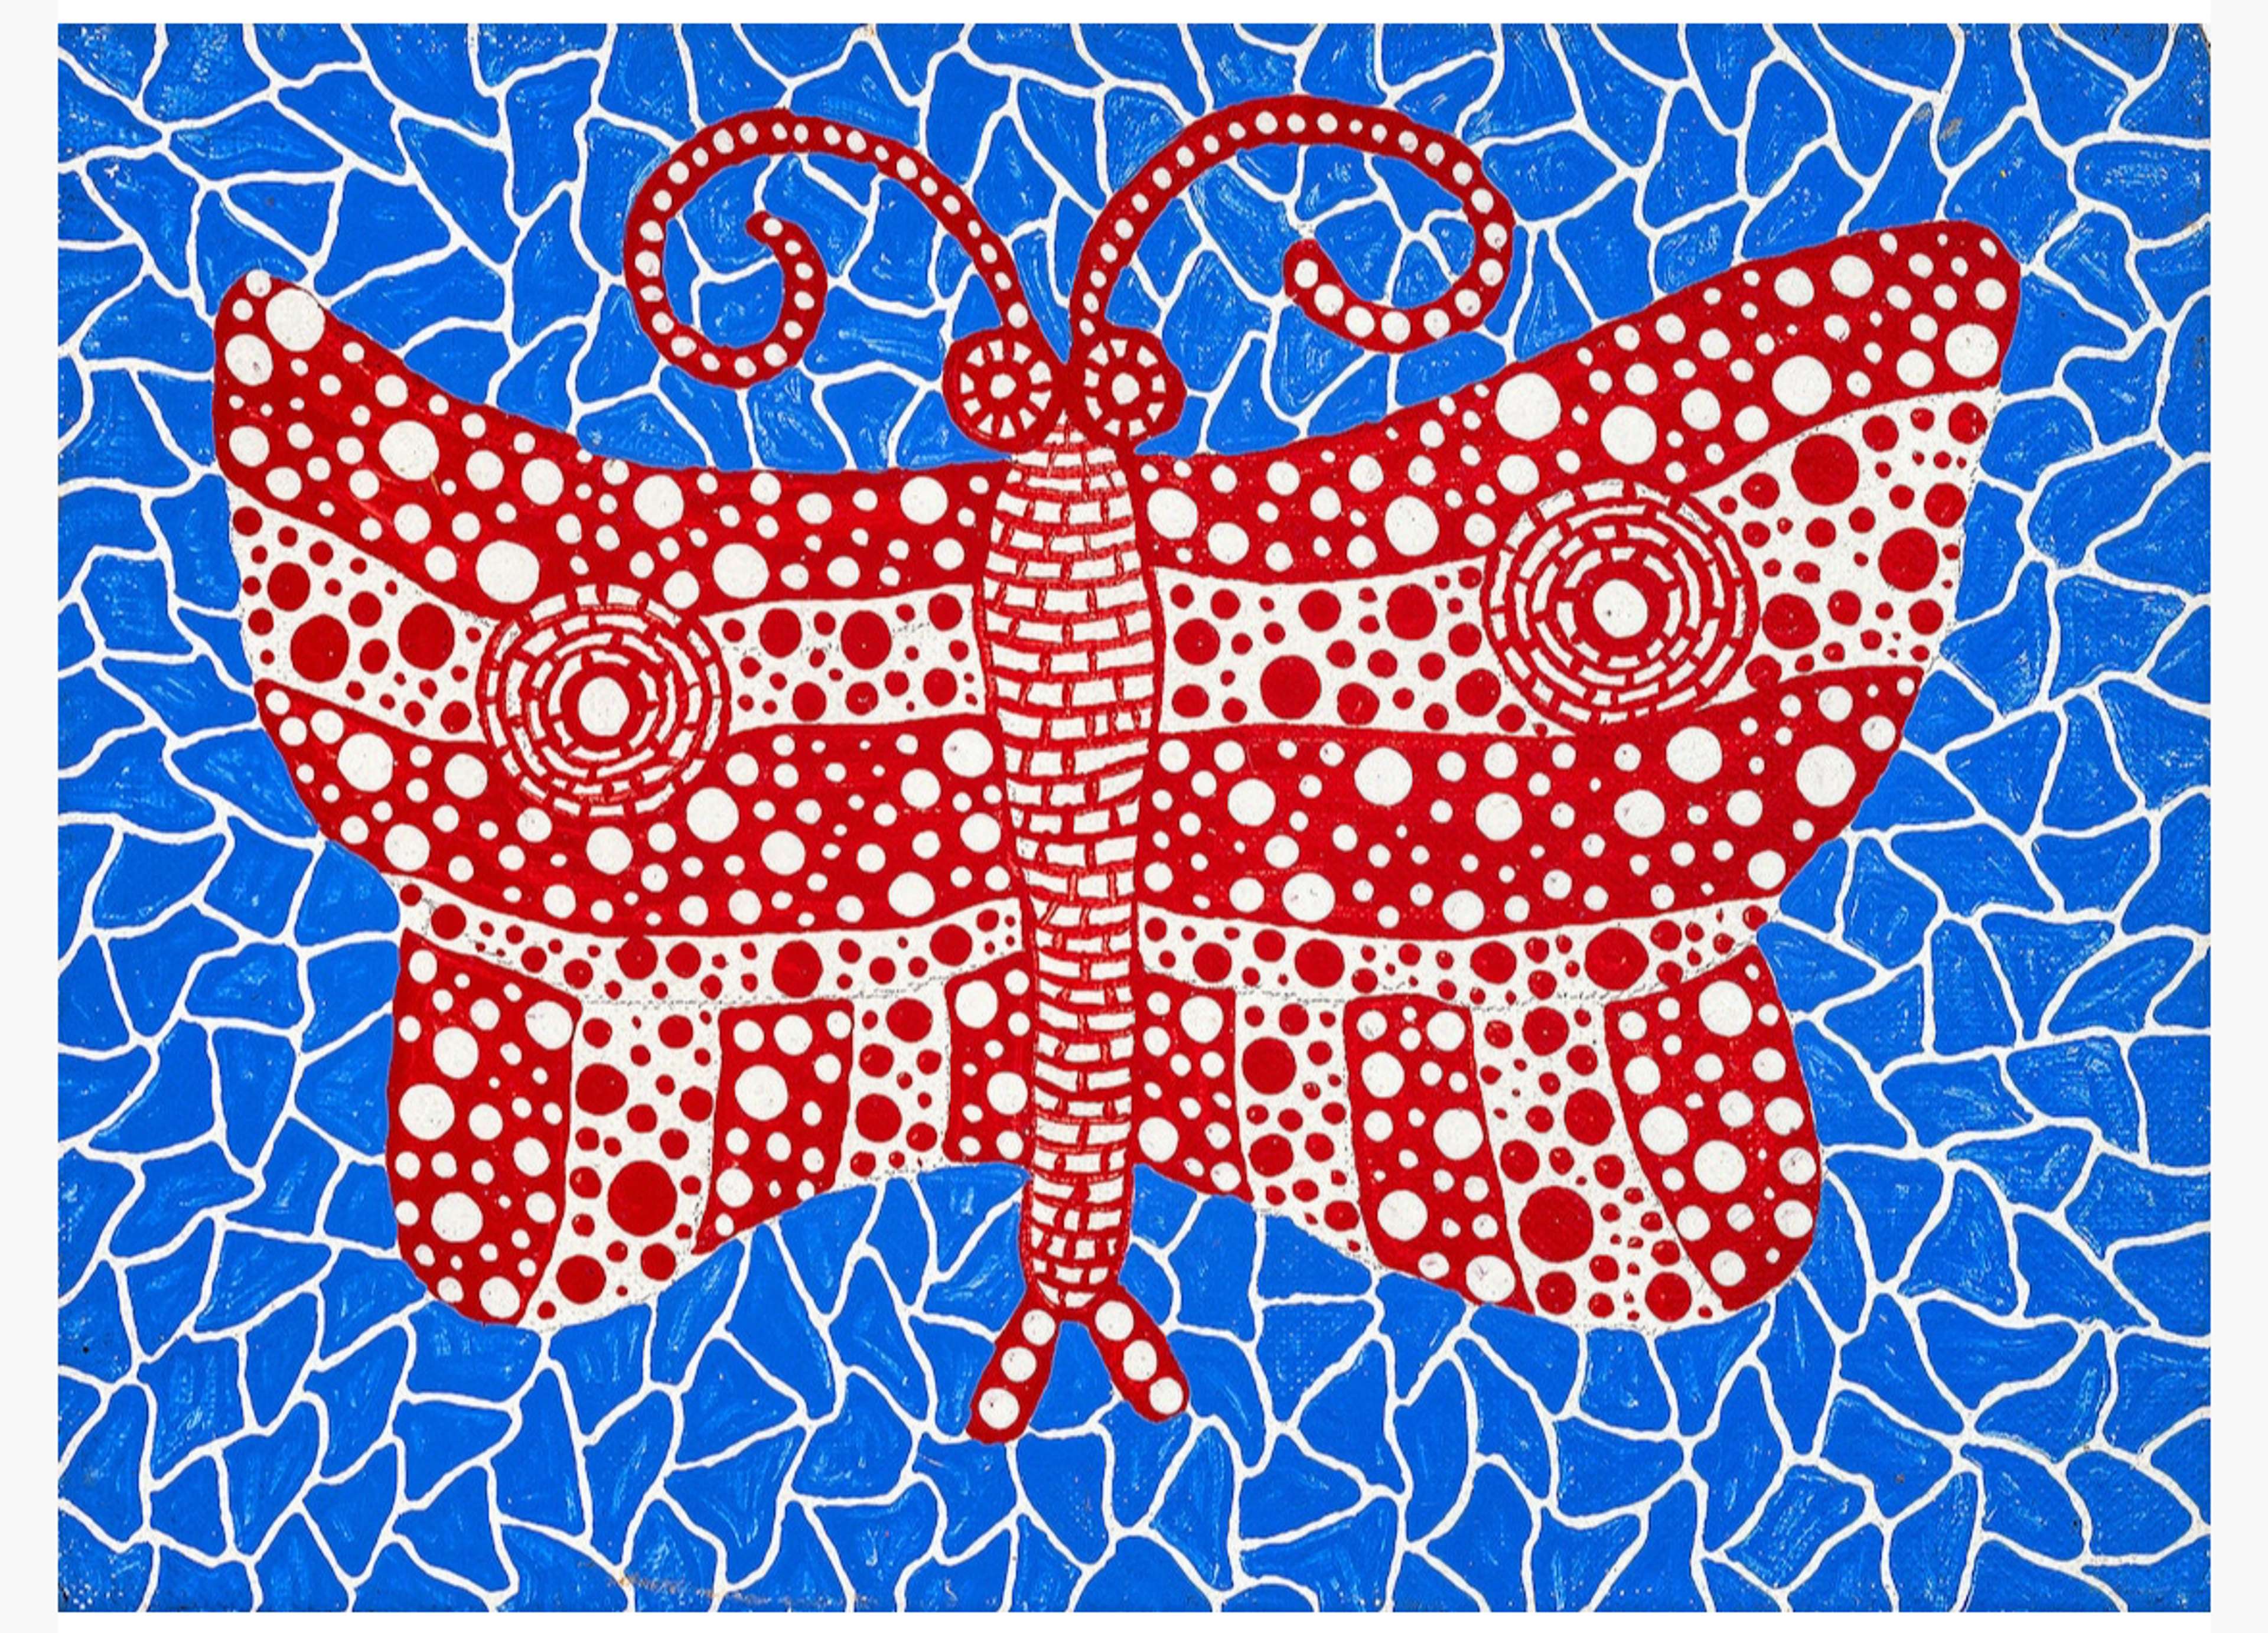 Butterfly by Yayoi Kusama 1990 